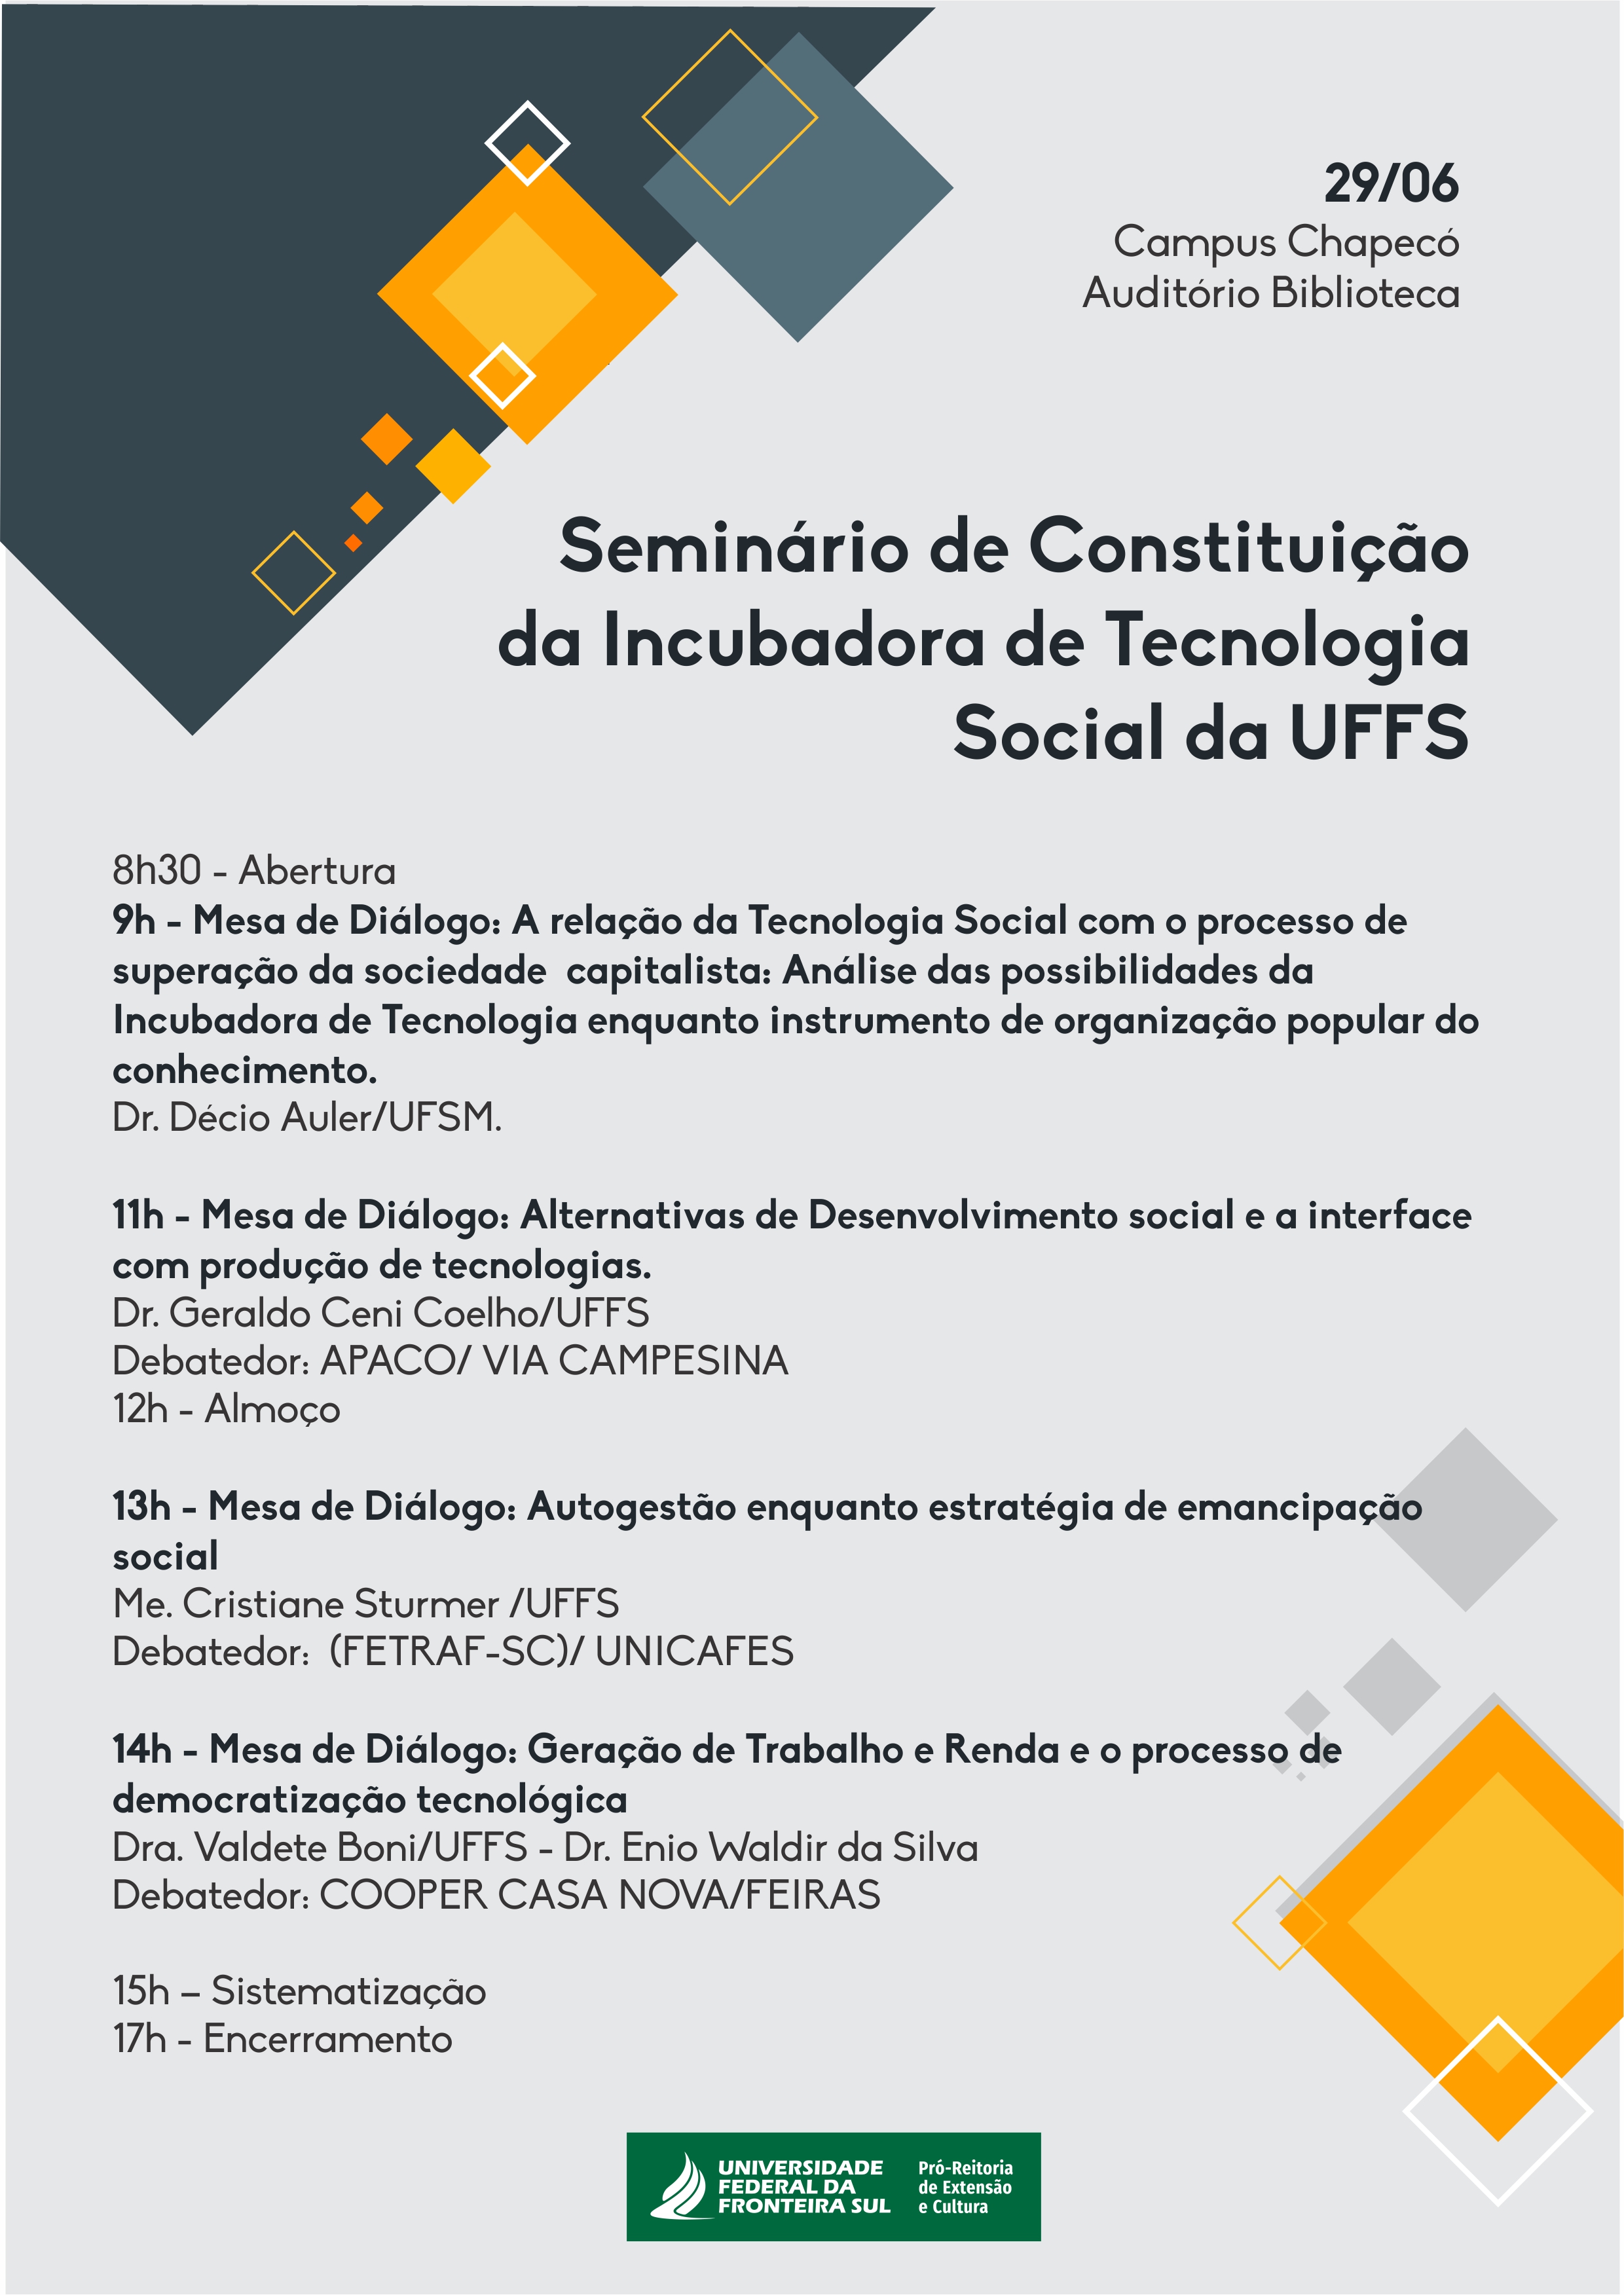 Seminário de Constituição da Incubadora de Tecnologia Social da UFFS